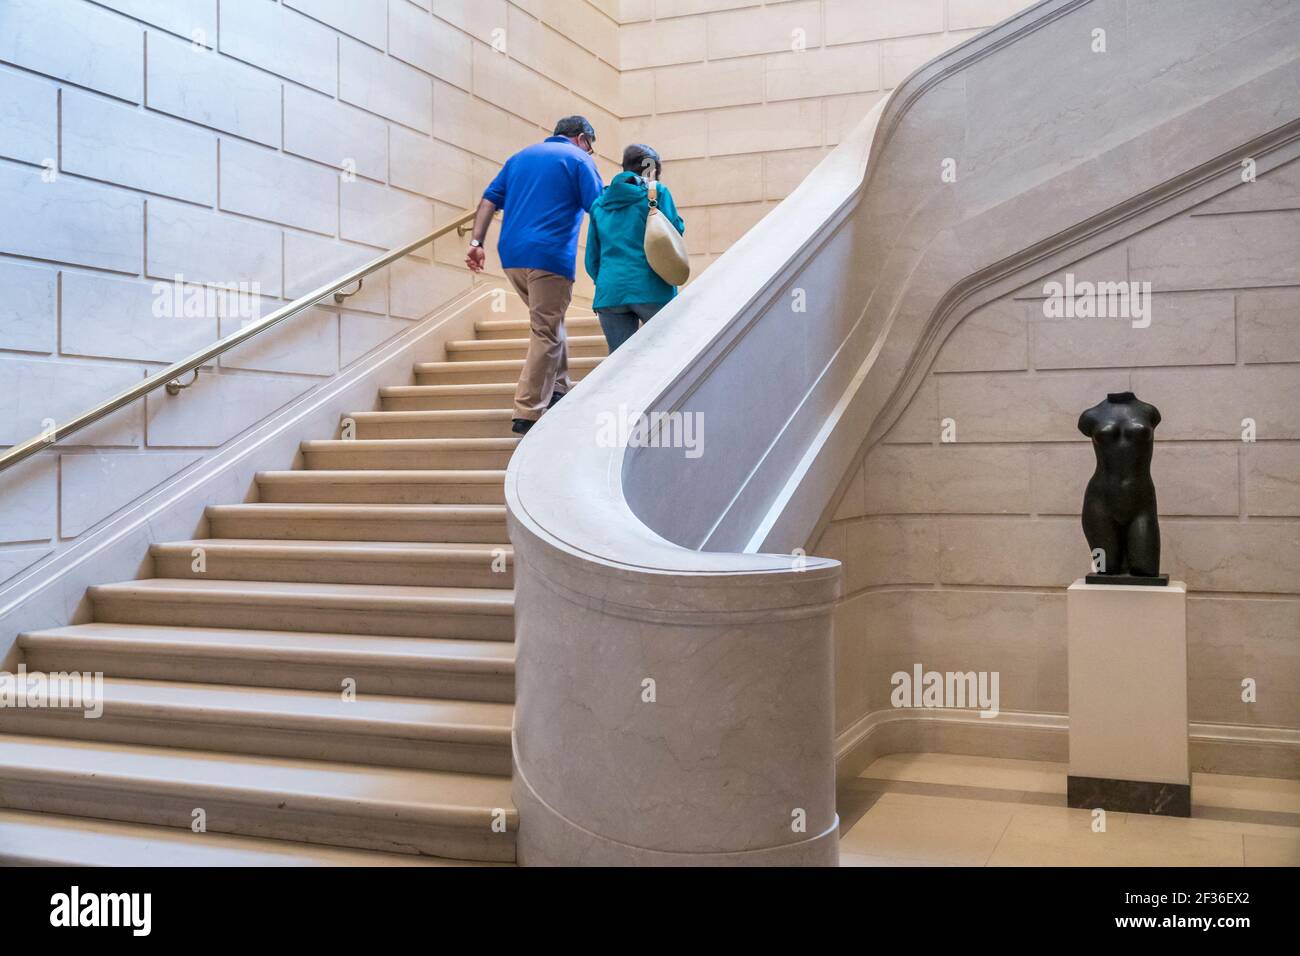 Washington DC, National Gallery of Art Museum, à l'intérieur des escaliers homme femme femme couple ascendant monter, Banque D'Images